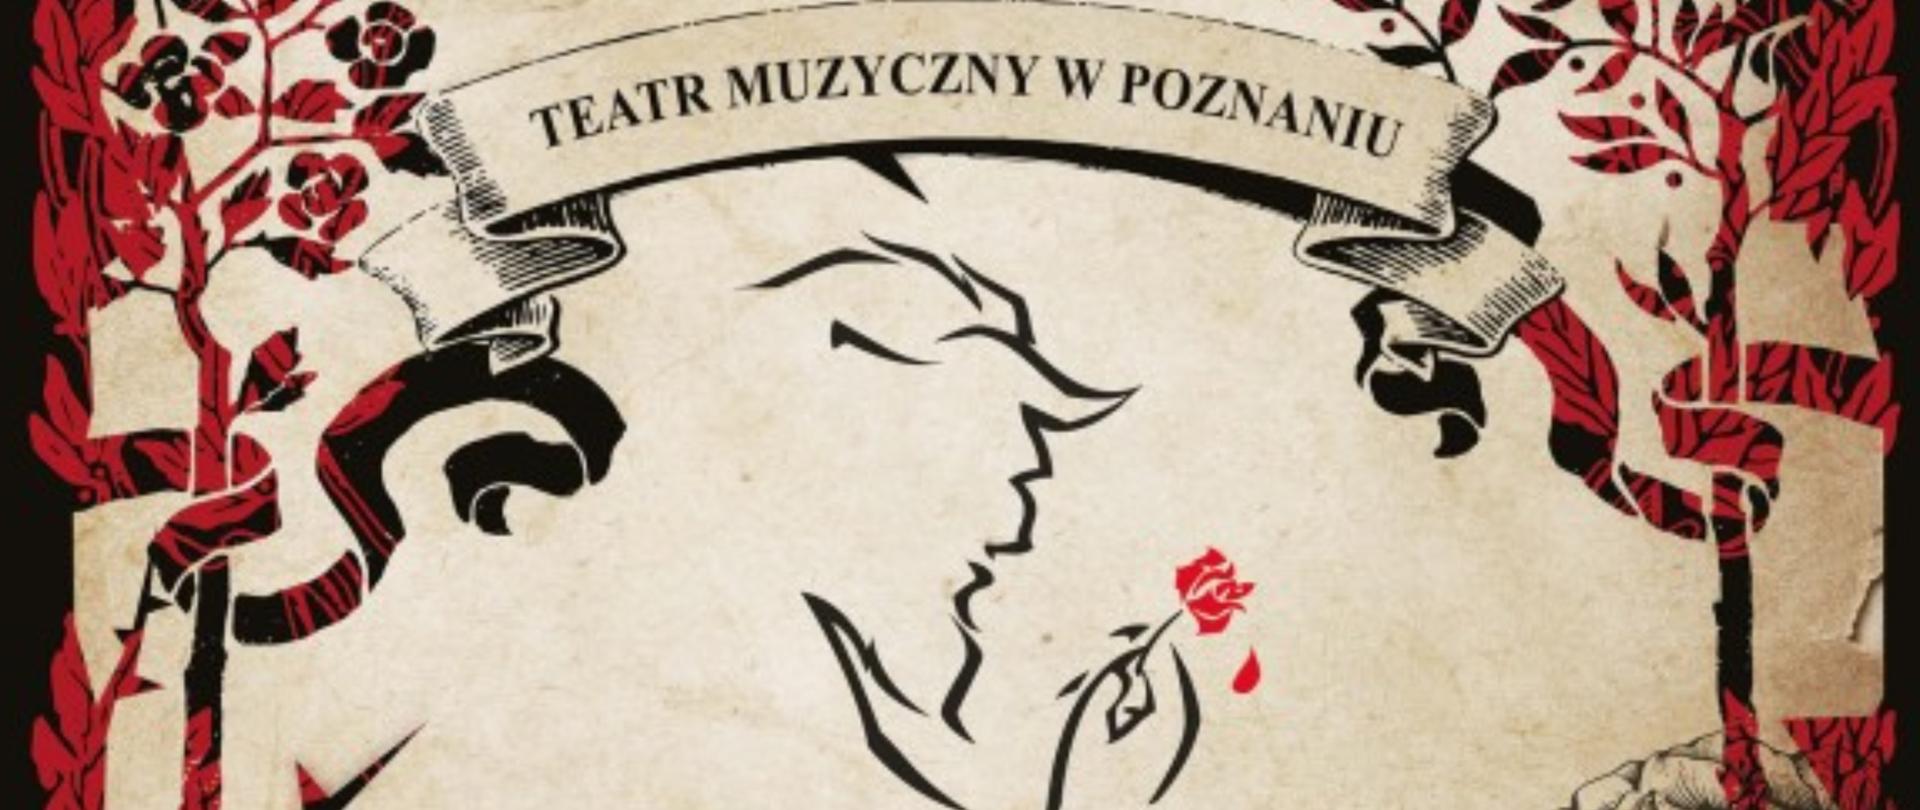 Plakat spektaklu pod tytułem Piękna i Bestia. Od góry napis teatr Muzyczny w Poznaniu, poniżej zarys Bestii trzymającej czerwoną różę, poniżej logo Disneya oraz tytuł Piękna i Bestia.